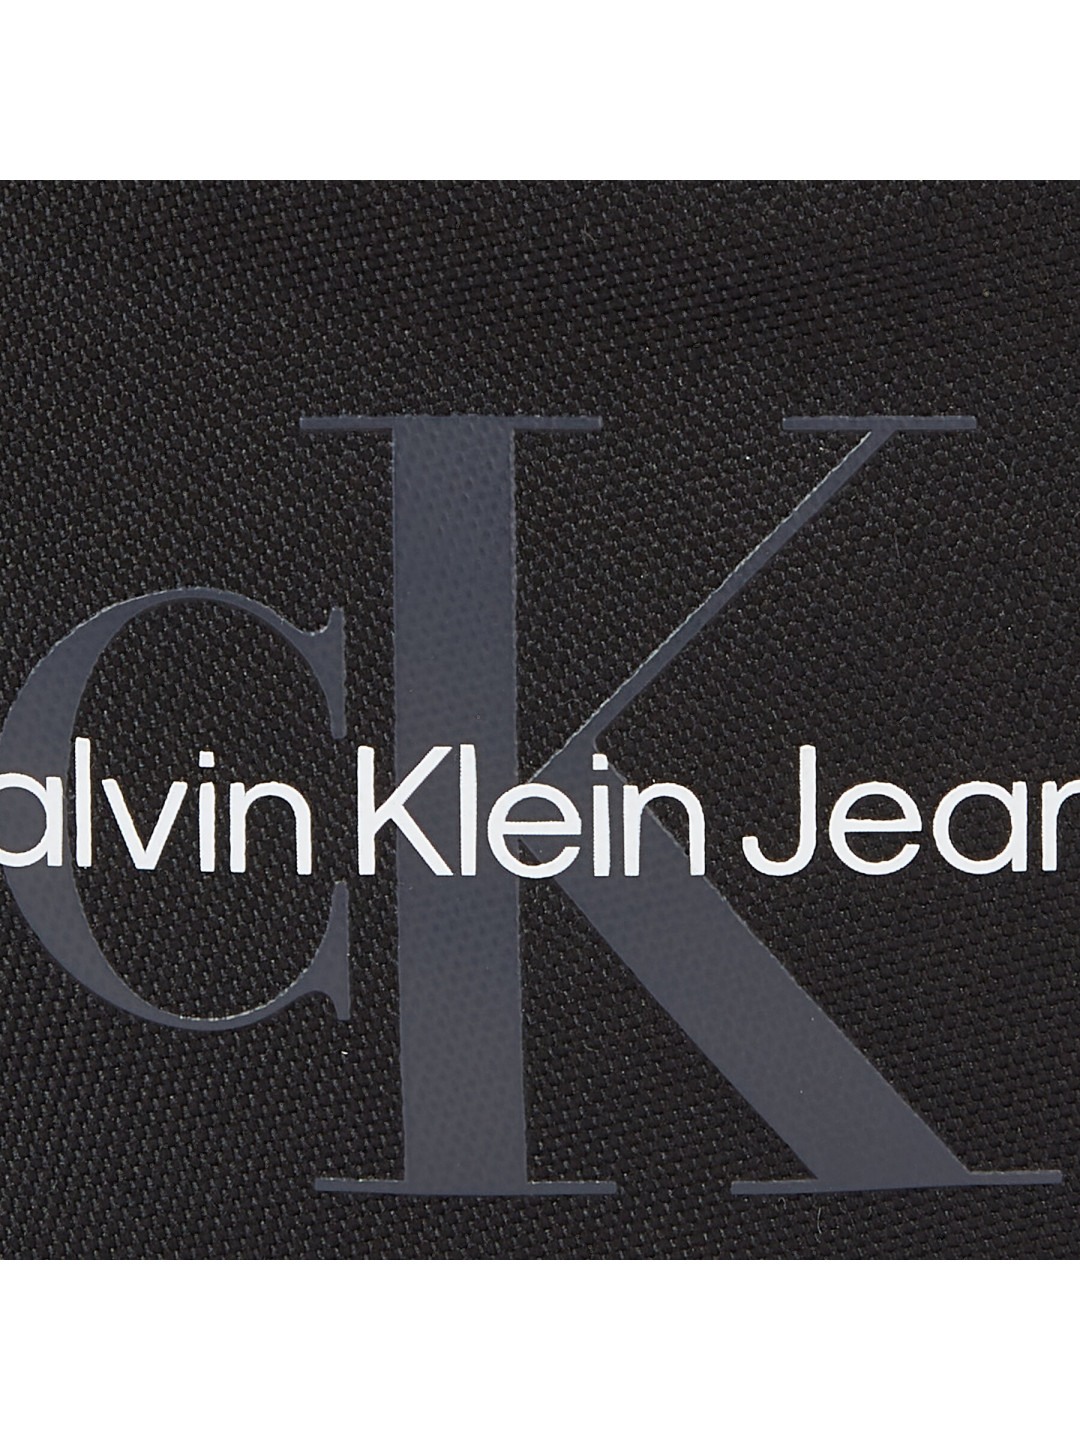 Ledvinka Calvin Klein Jeans